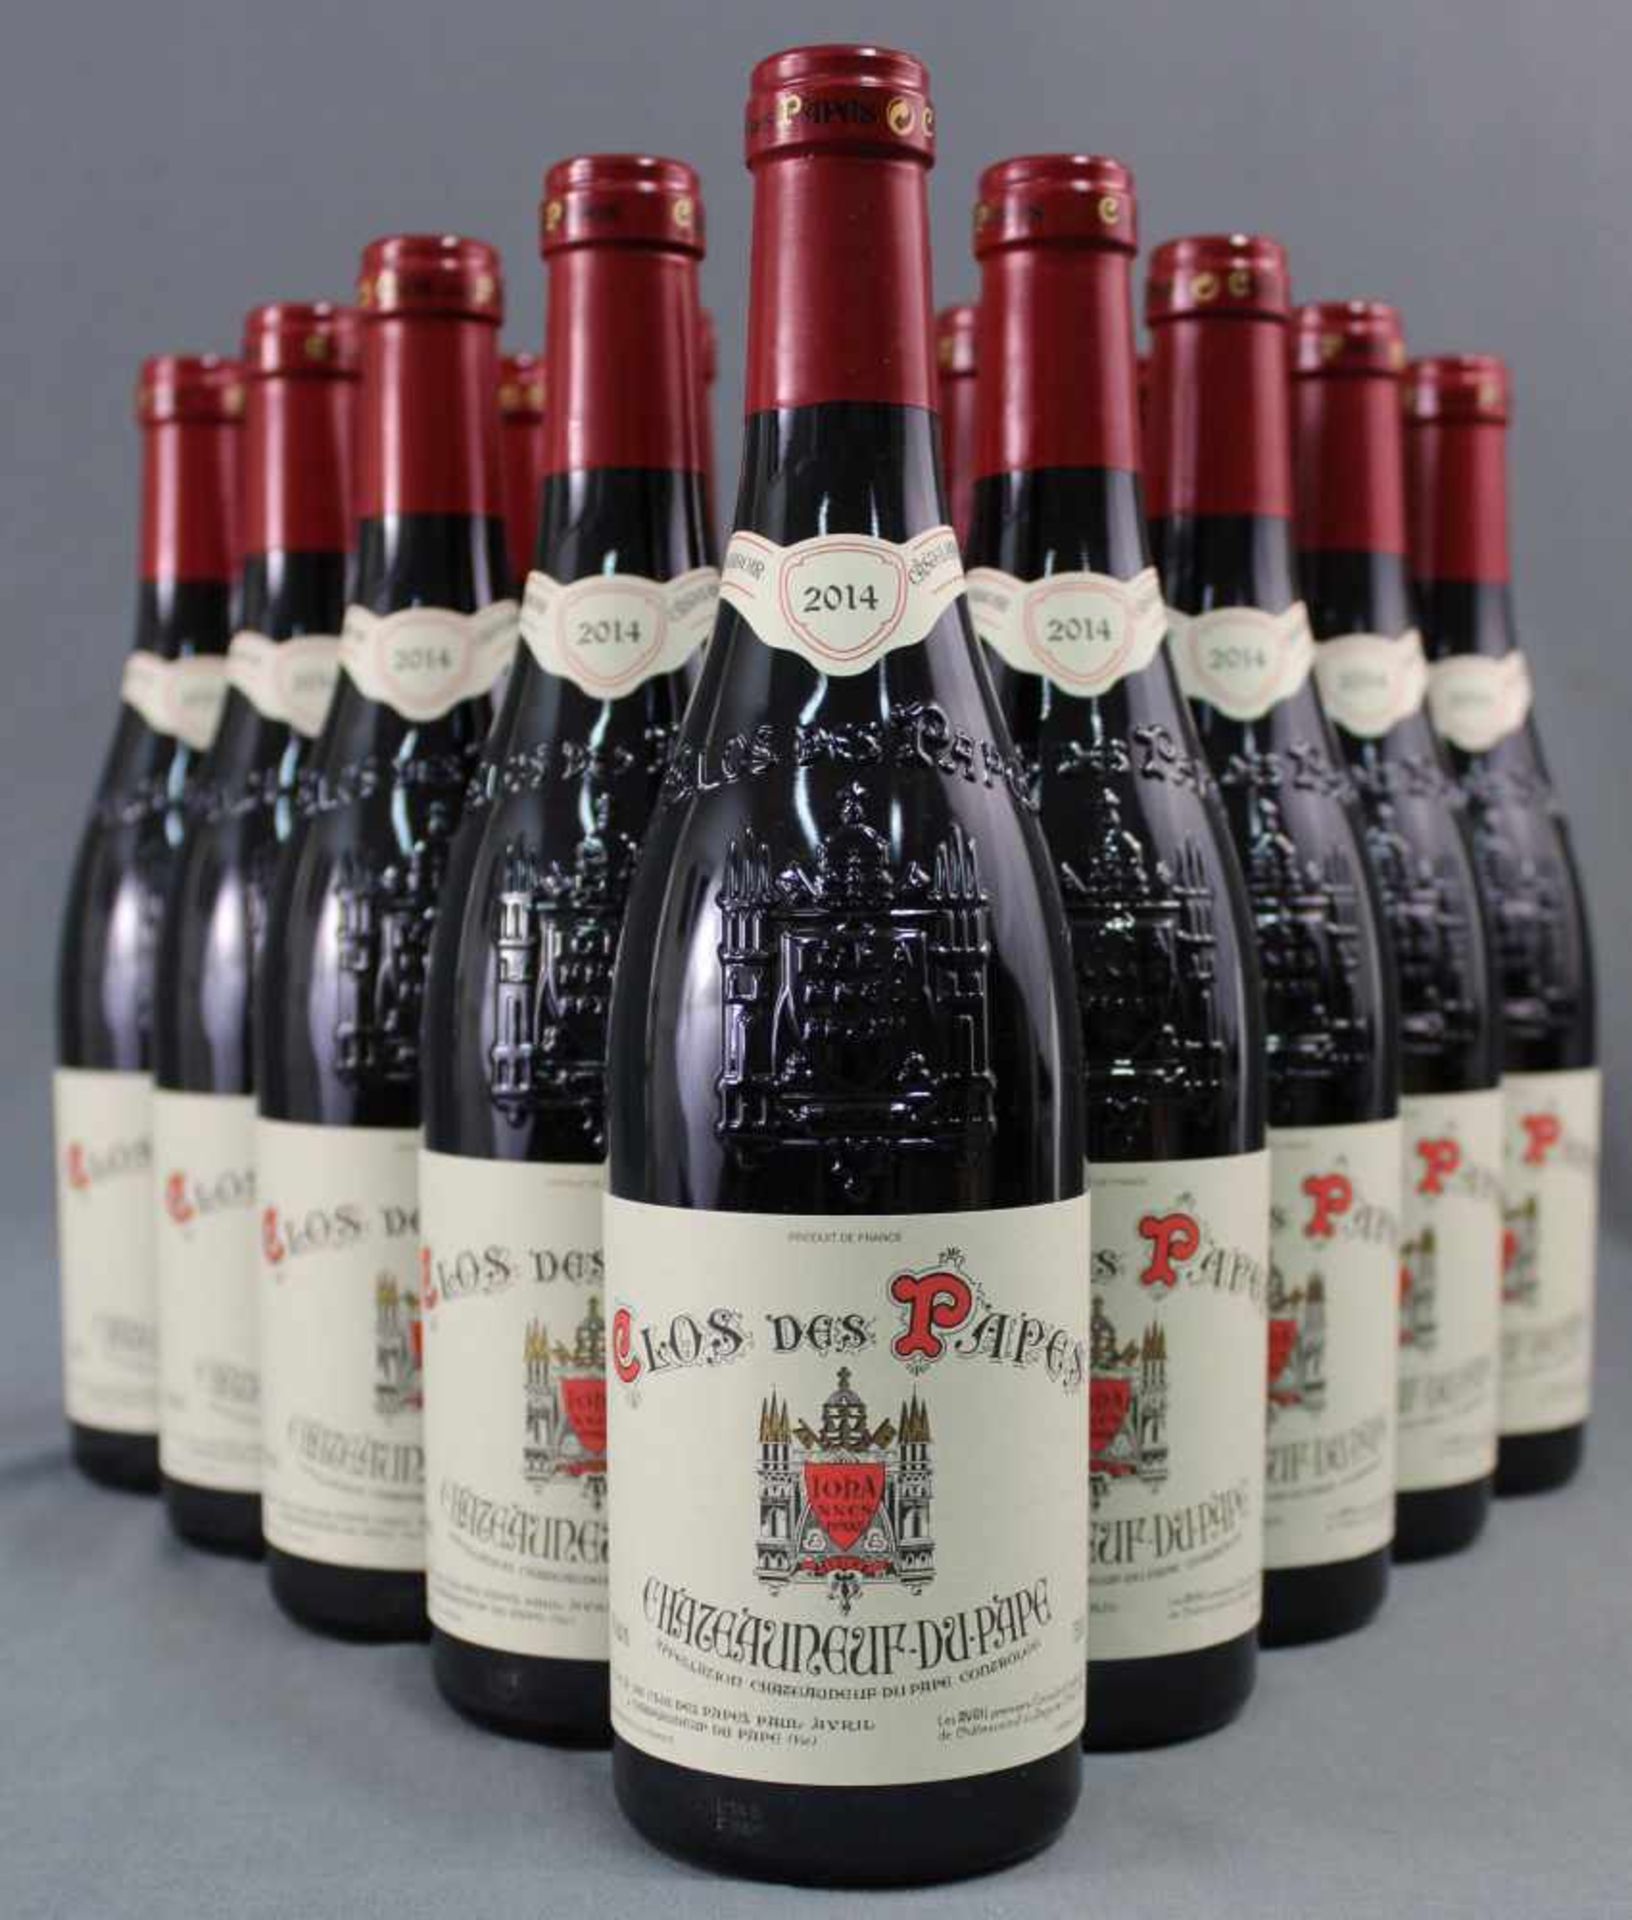 2014 Chateauneuf du Papes. "Clos des Papes". 14% Vol. 750 ml. 16 ganze Flaschen Rotwein